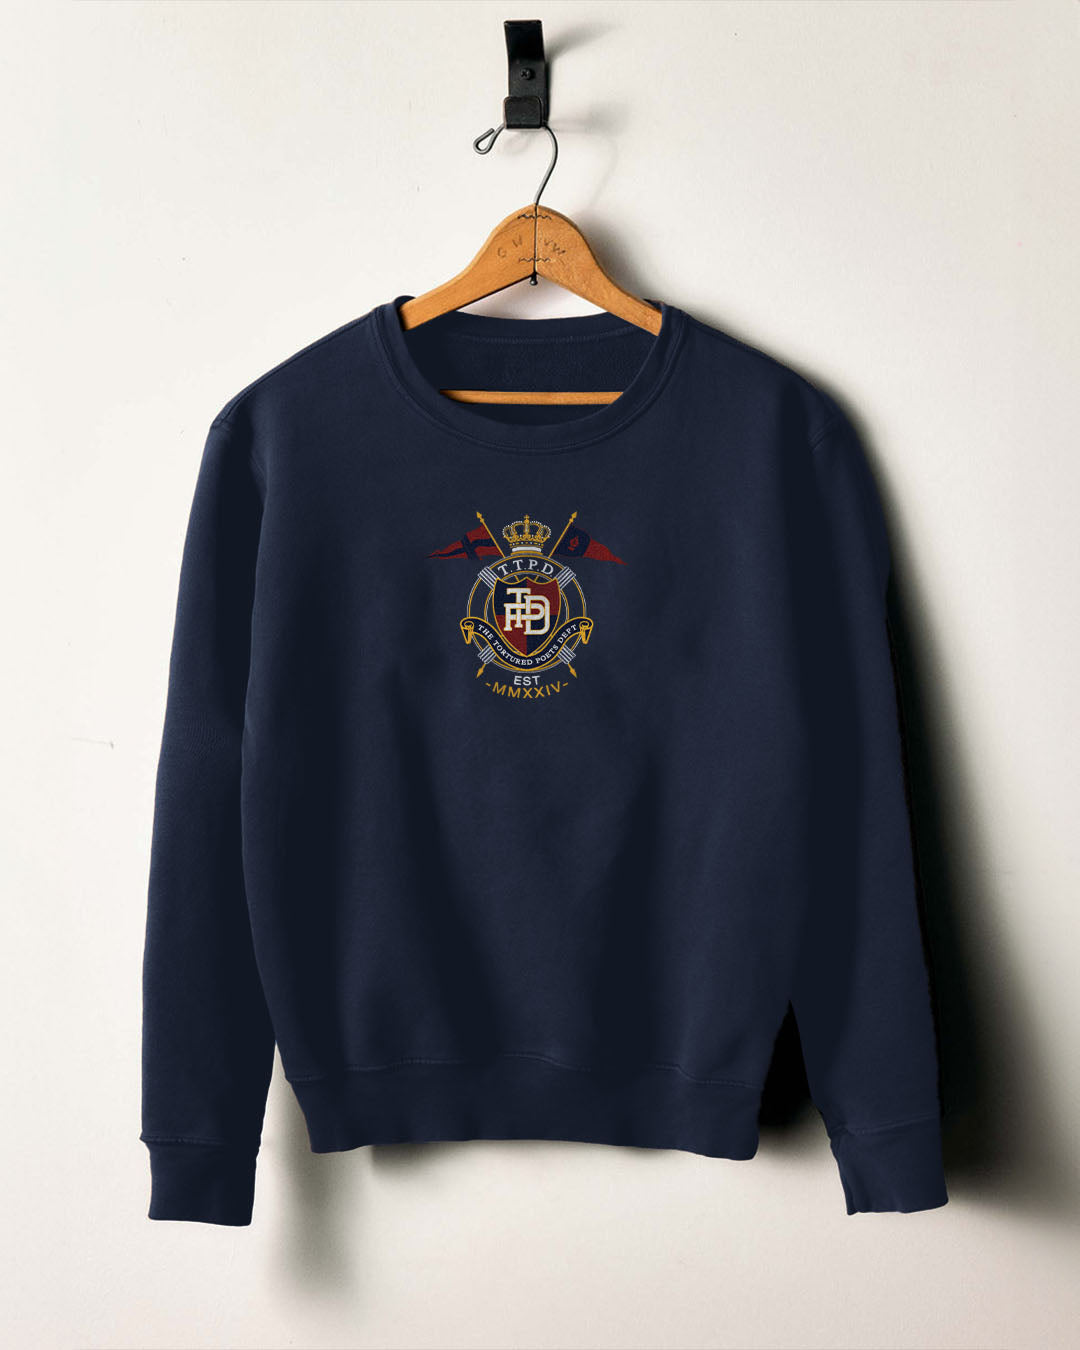 The Academia Sweatshirt